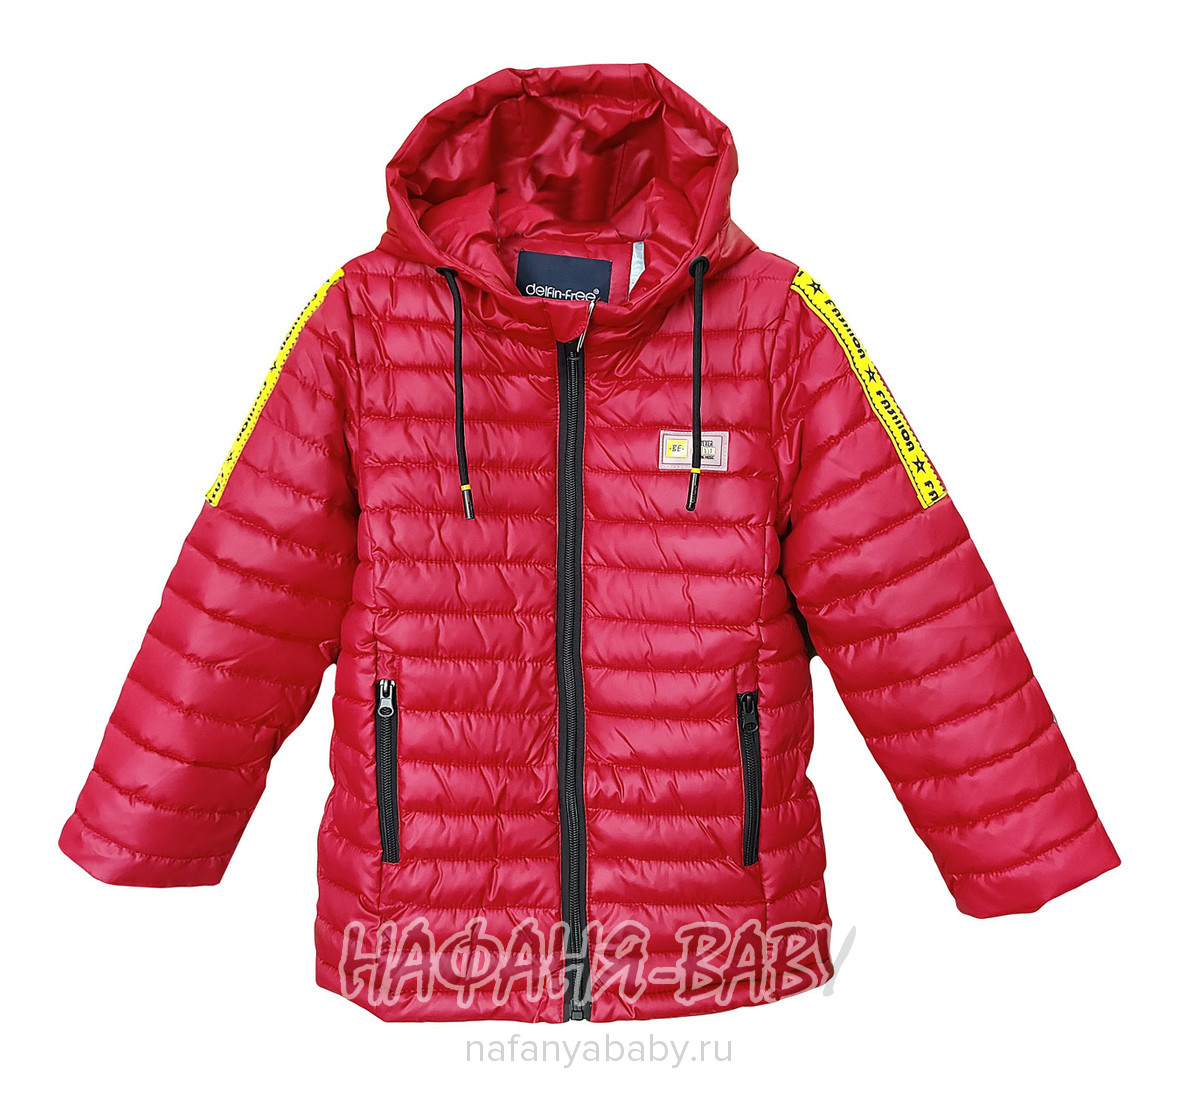 Детская демисезонная куртка DELFIN-FREE, купить в интернет магазине Нафаня. арт: 928 B.